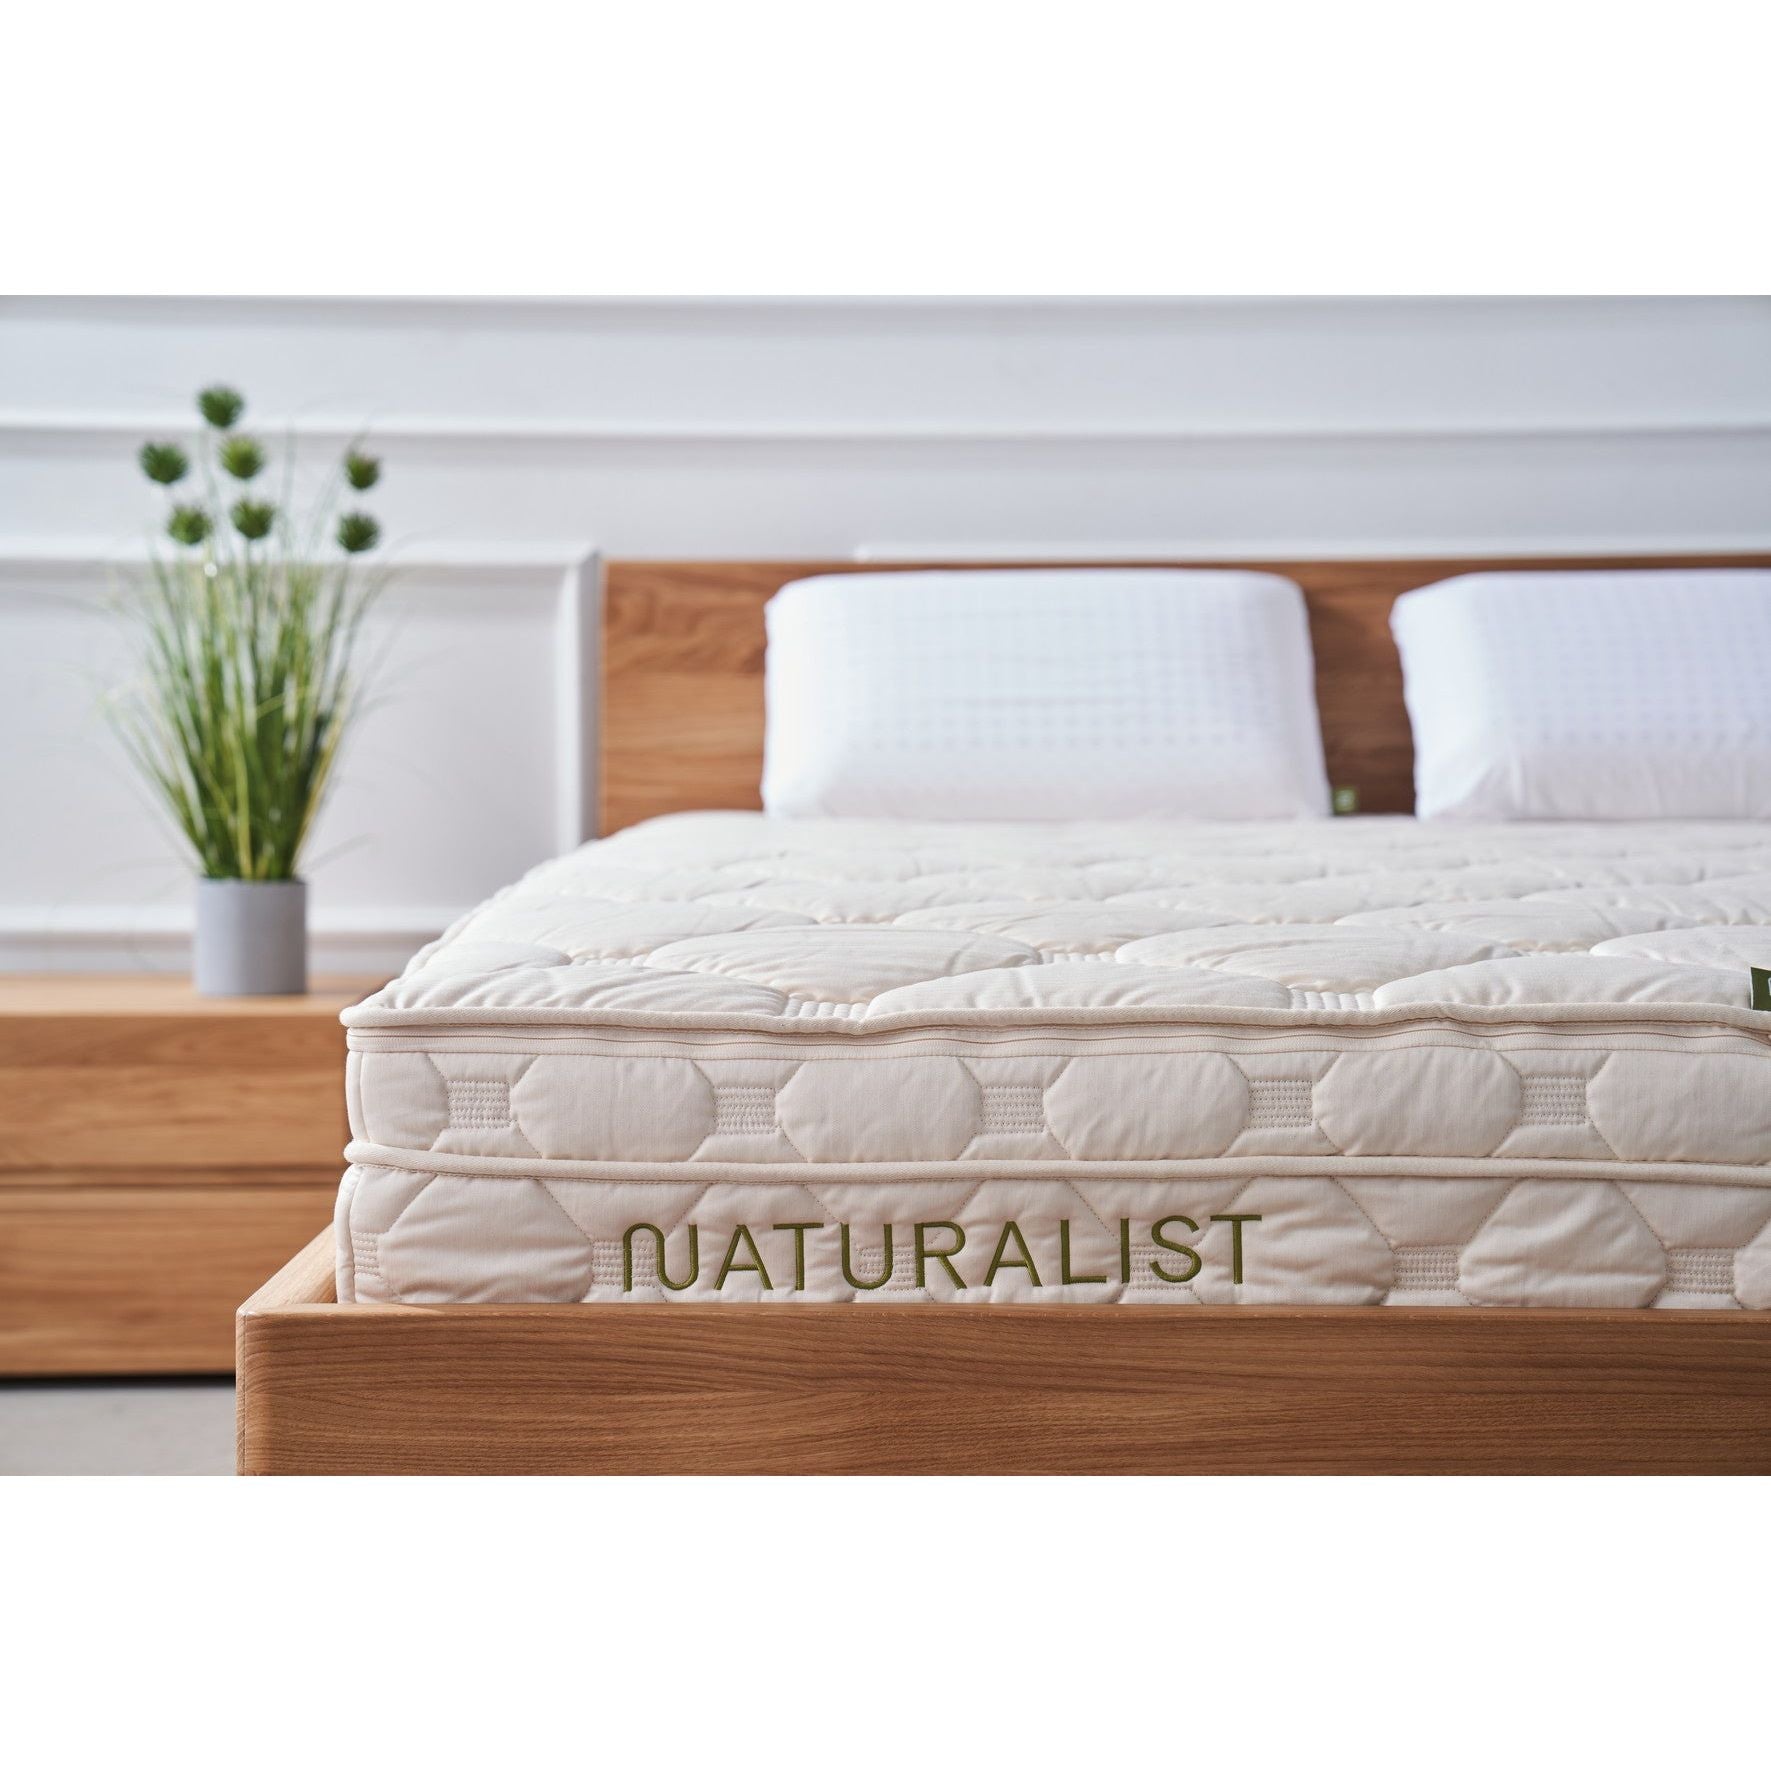 Bild mit Matratze und Bett